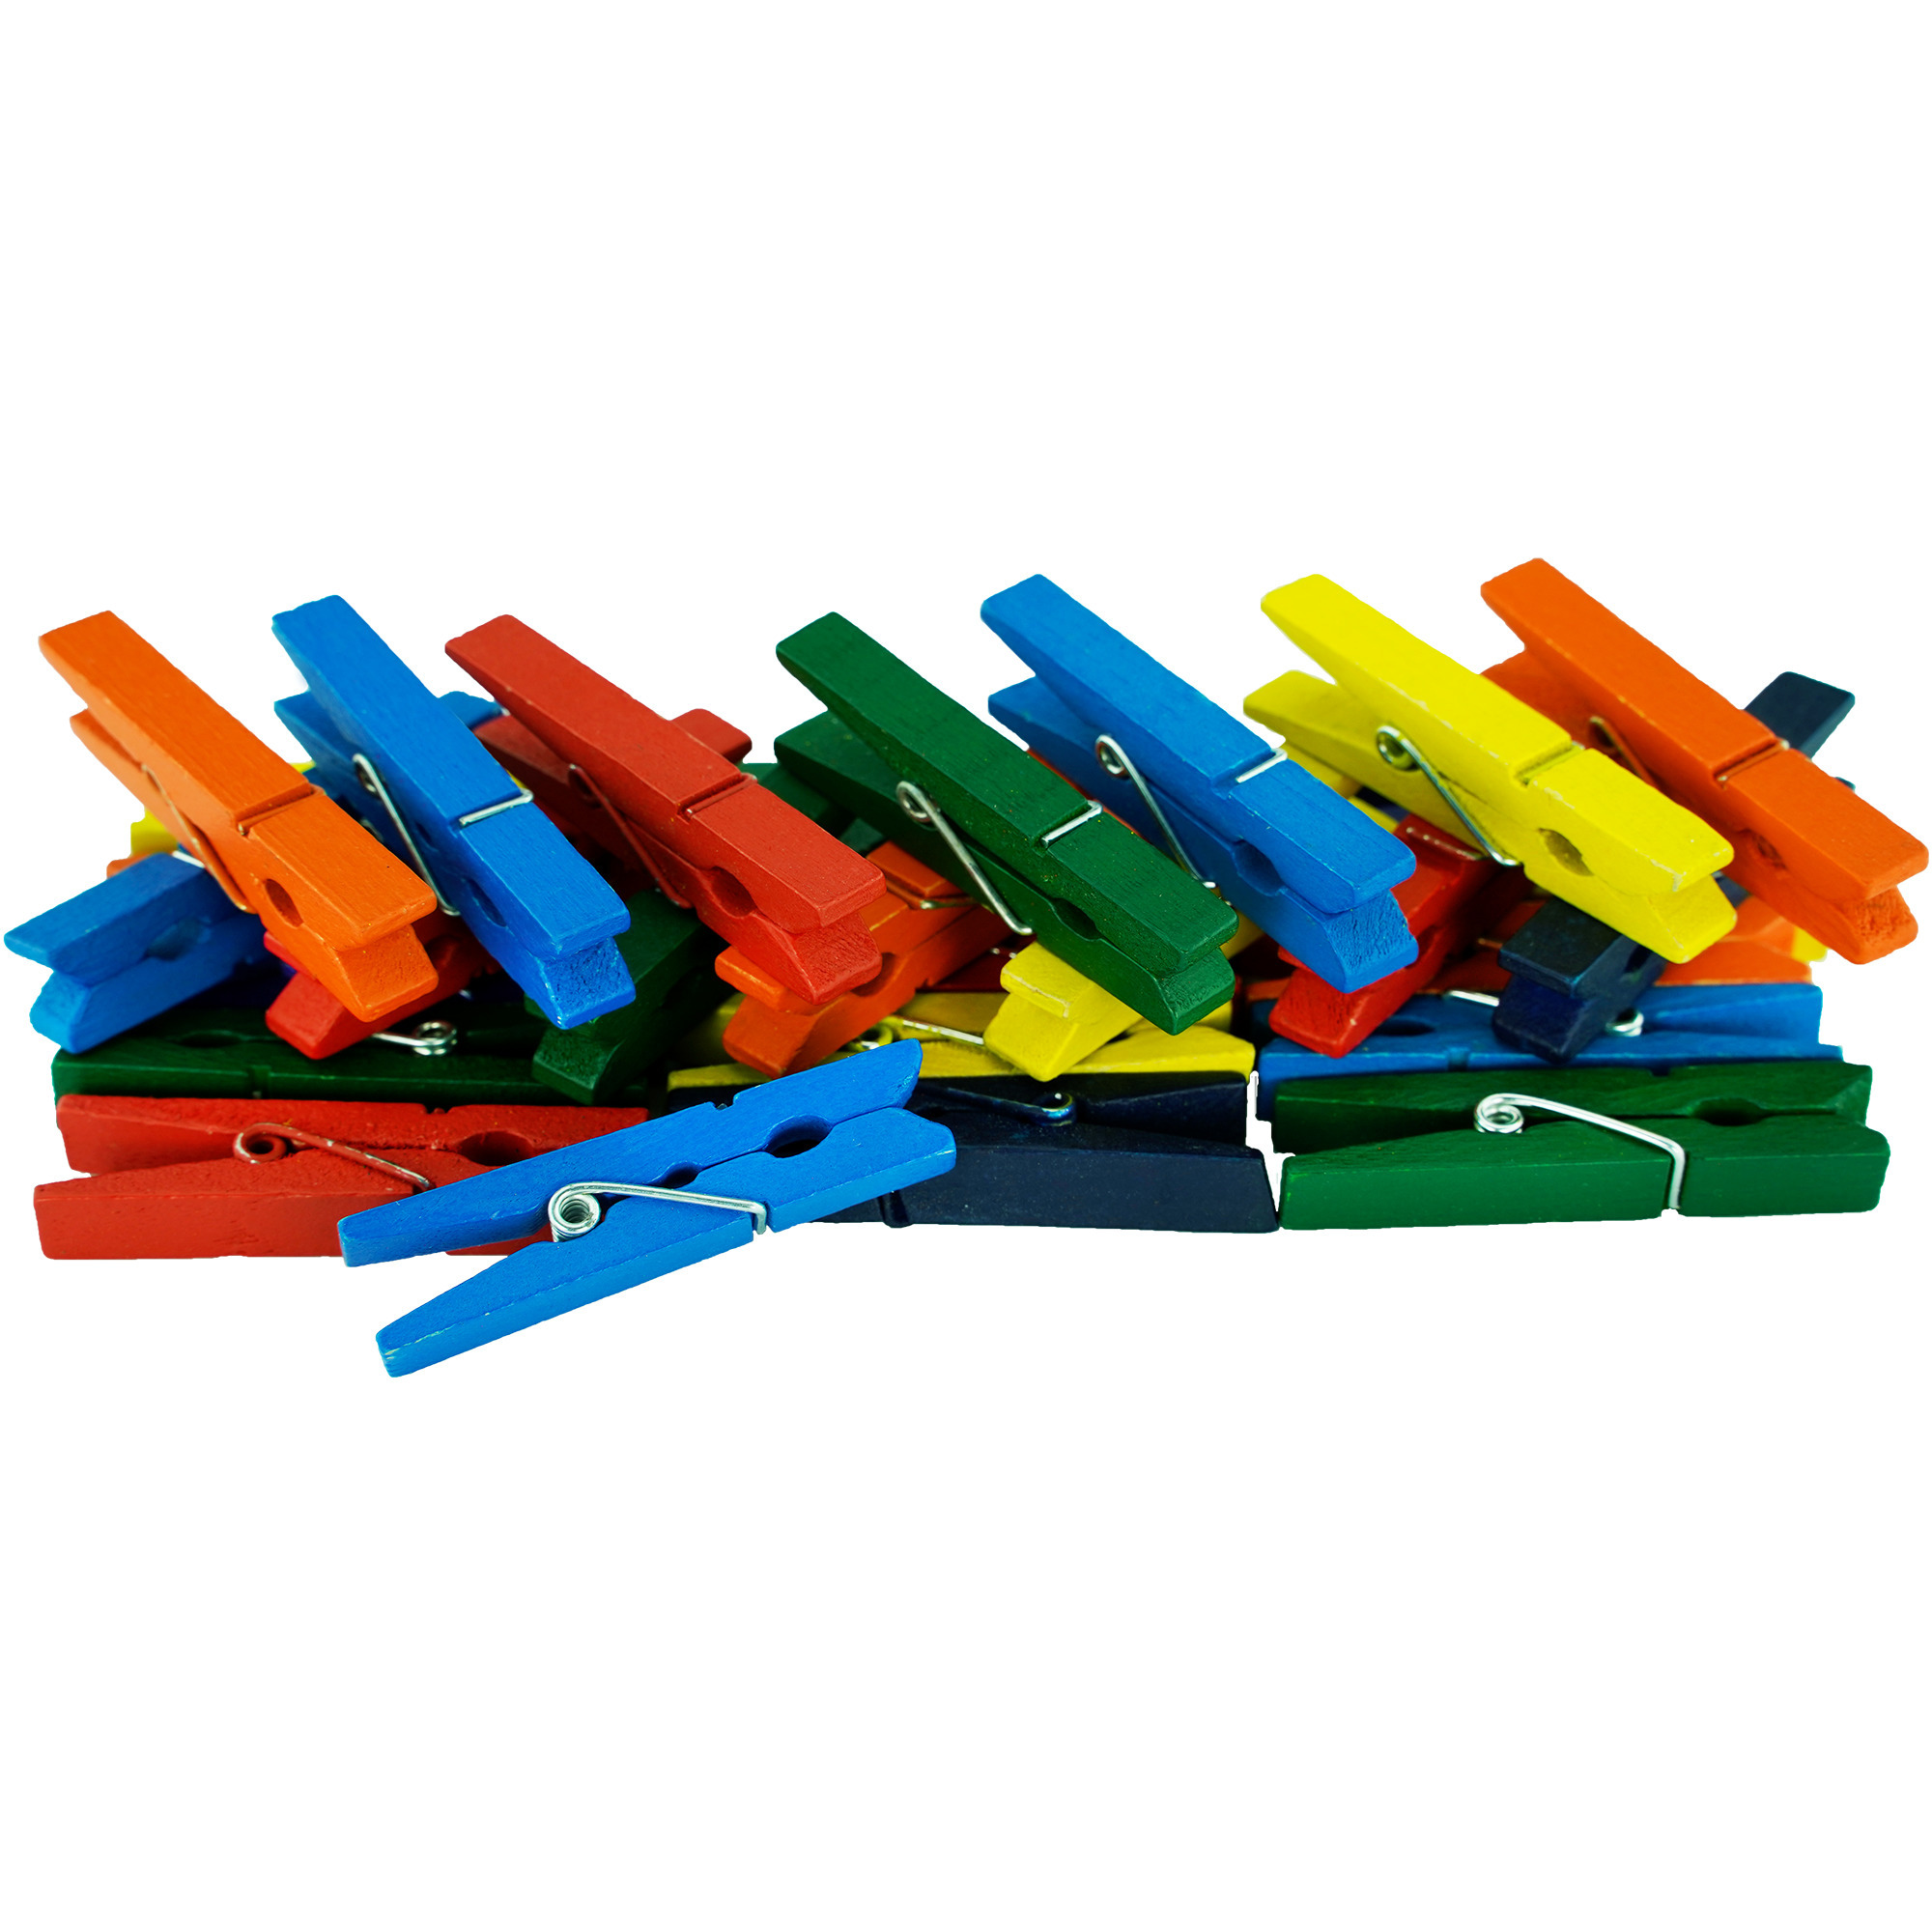 200x stuks multi-color kleur hobby knutselen mini knijpers-knijpertjes 4.5 cm